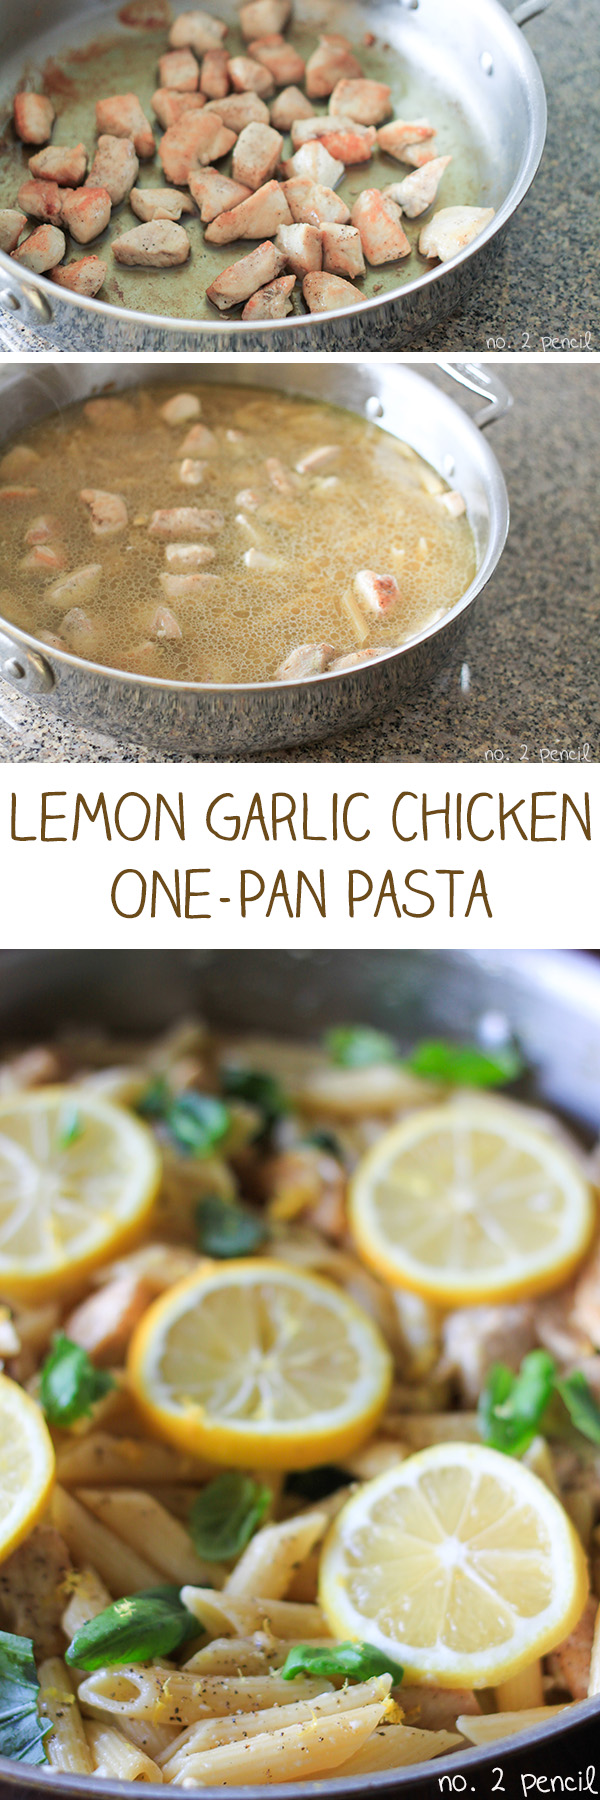 One-Pan Lemon Garlic Chicken Pasta 